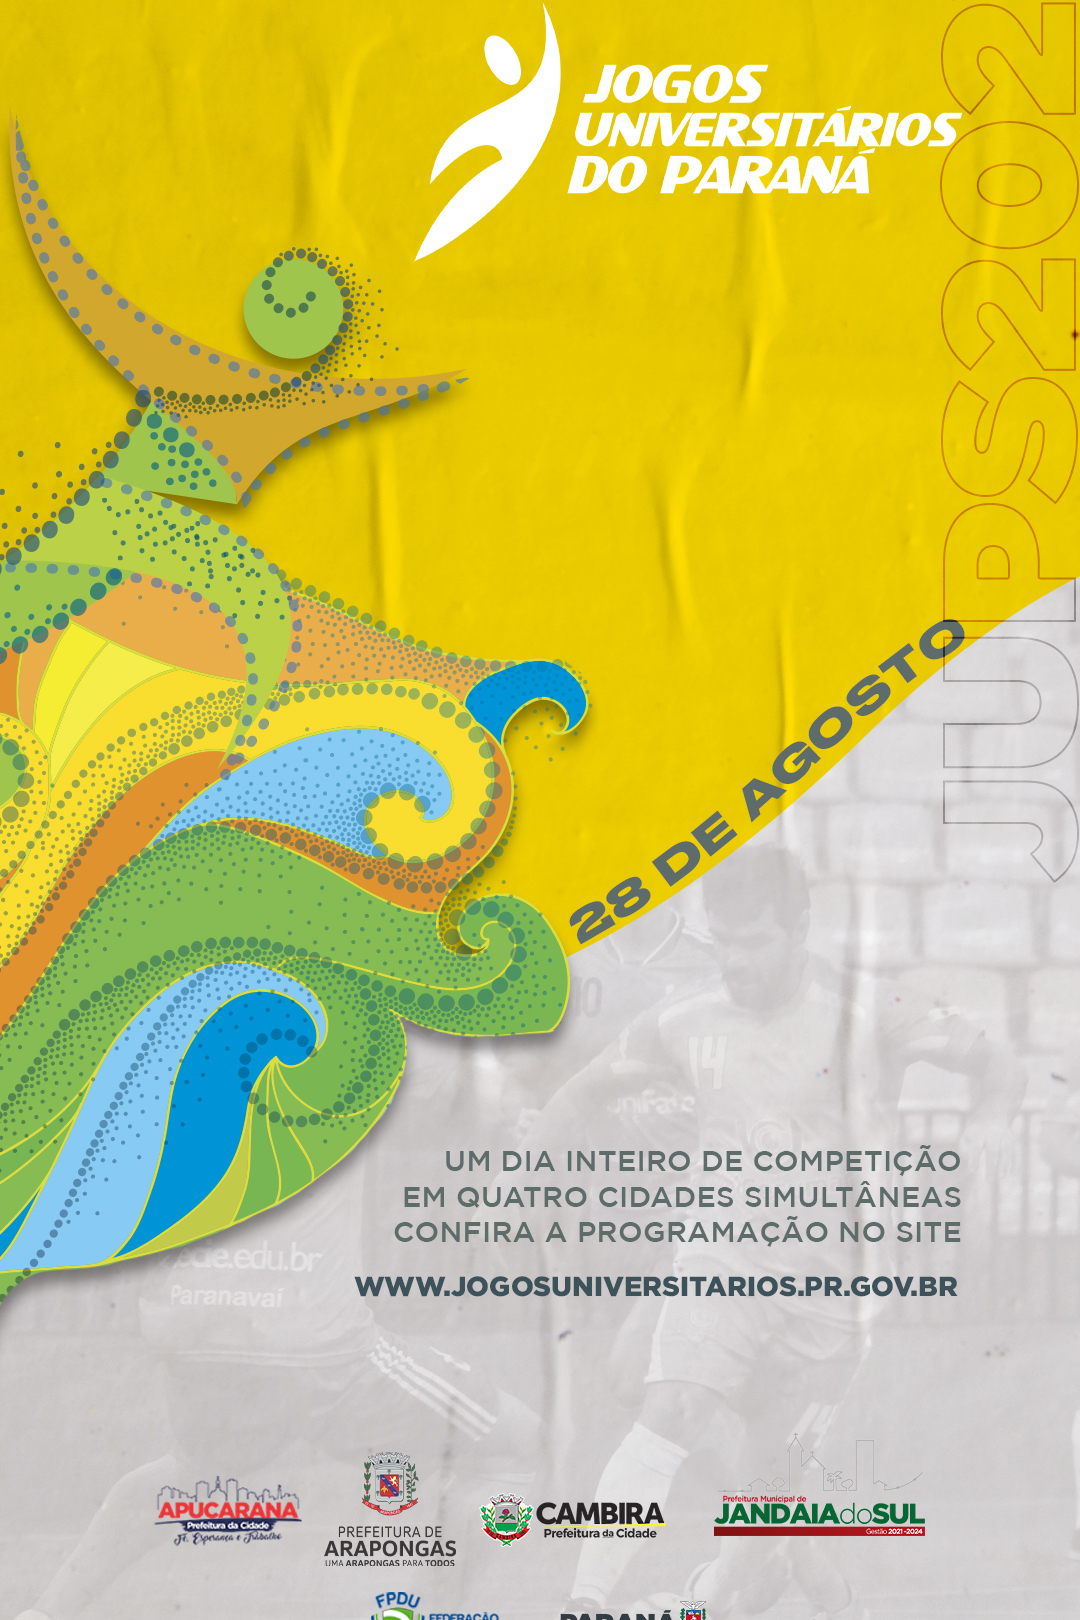 41ª edição dos Jogos Universitários Gaúchos acontece online